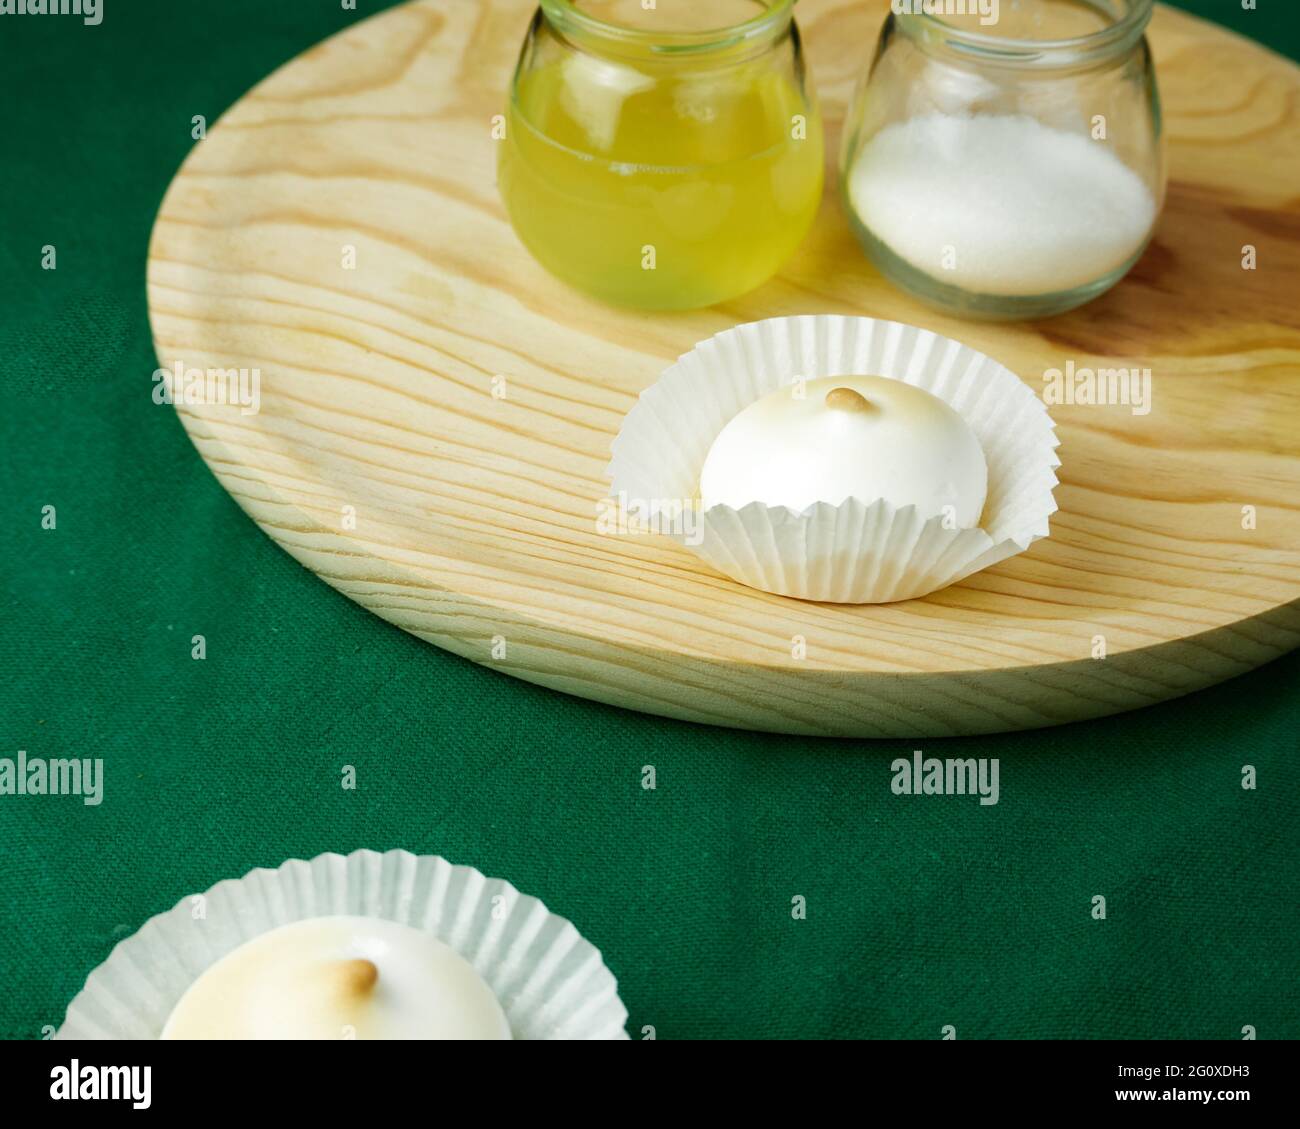 Mehrere französische Desserts Meringue zu einer Silikonform Formen auf grüner Tischdecke und seine Zutaten auf einem runden Holzteller Stockfoto